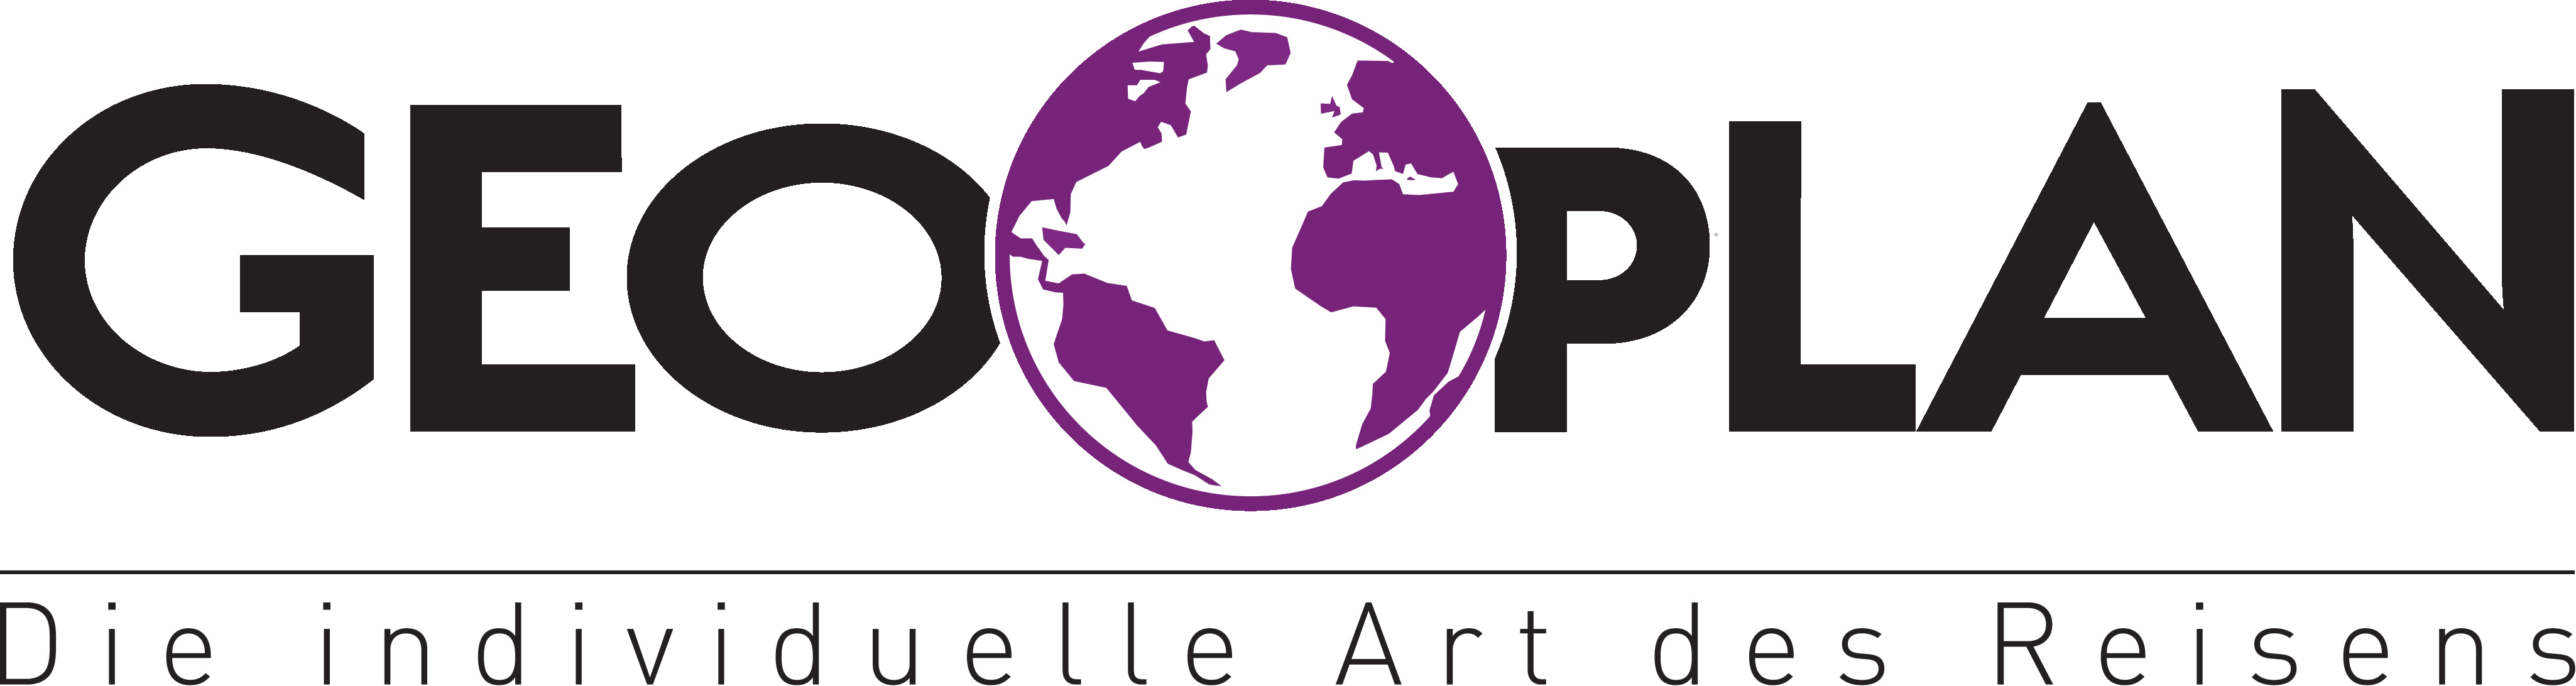 Geoplan Logo 2015 4c Web